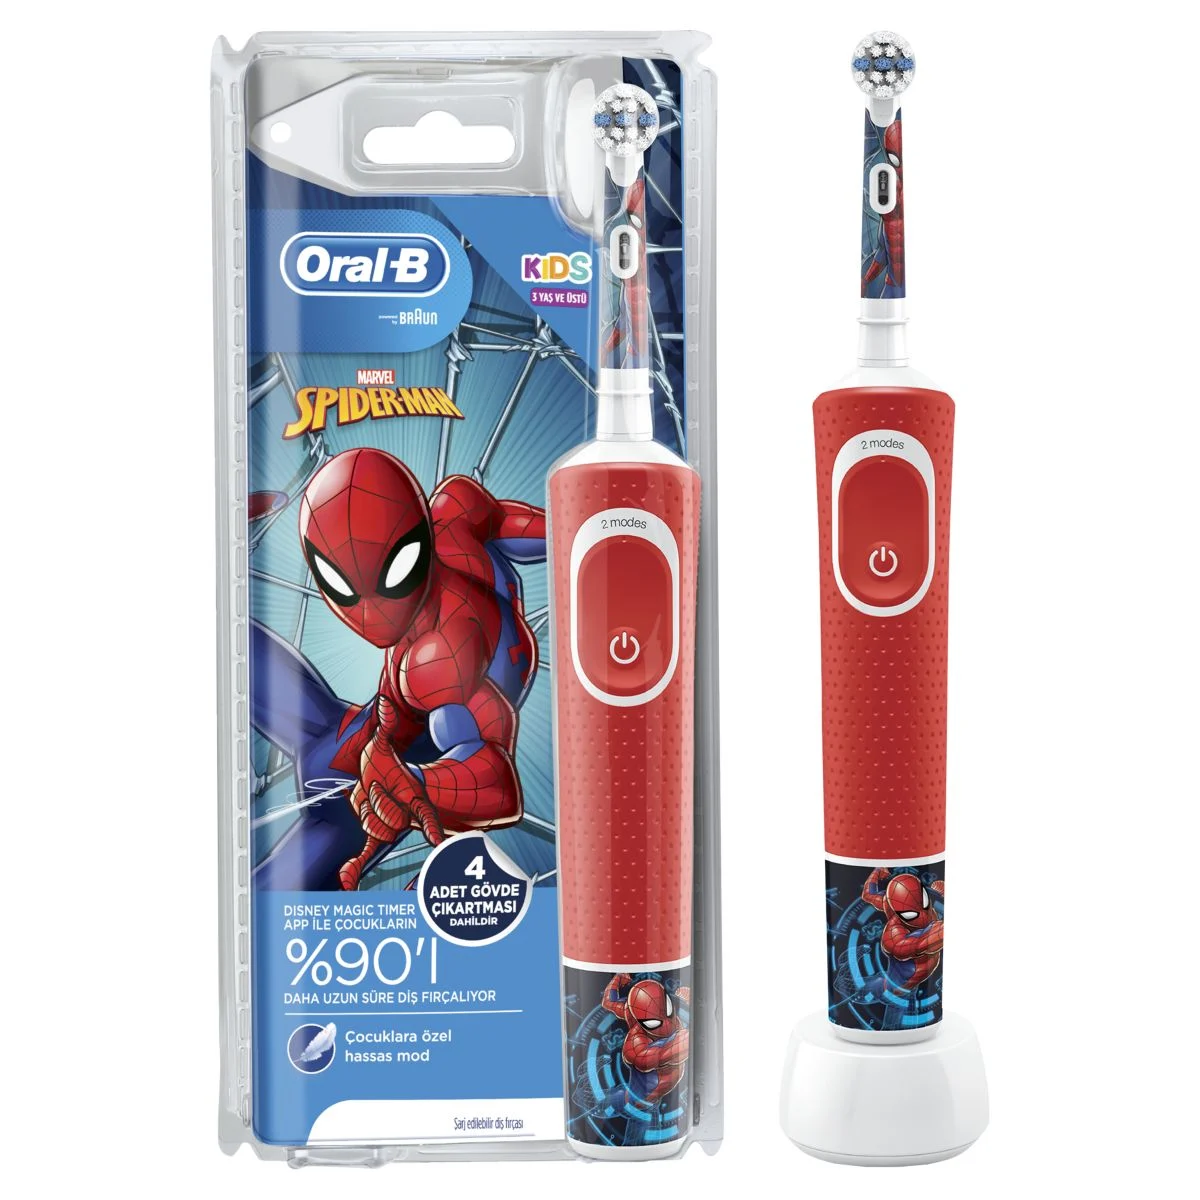 Oral-B Kids Elektrikli Diş Fırçası Örümcek Adam 